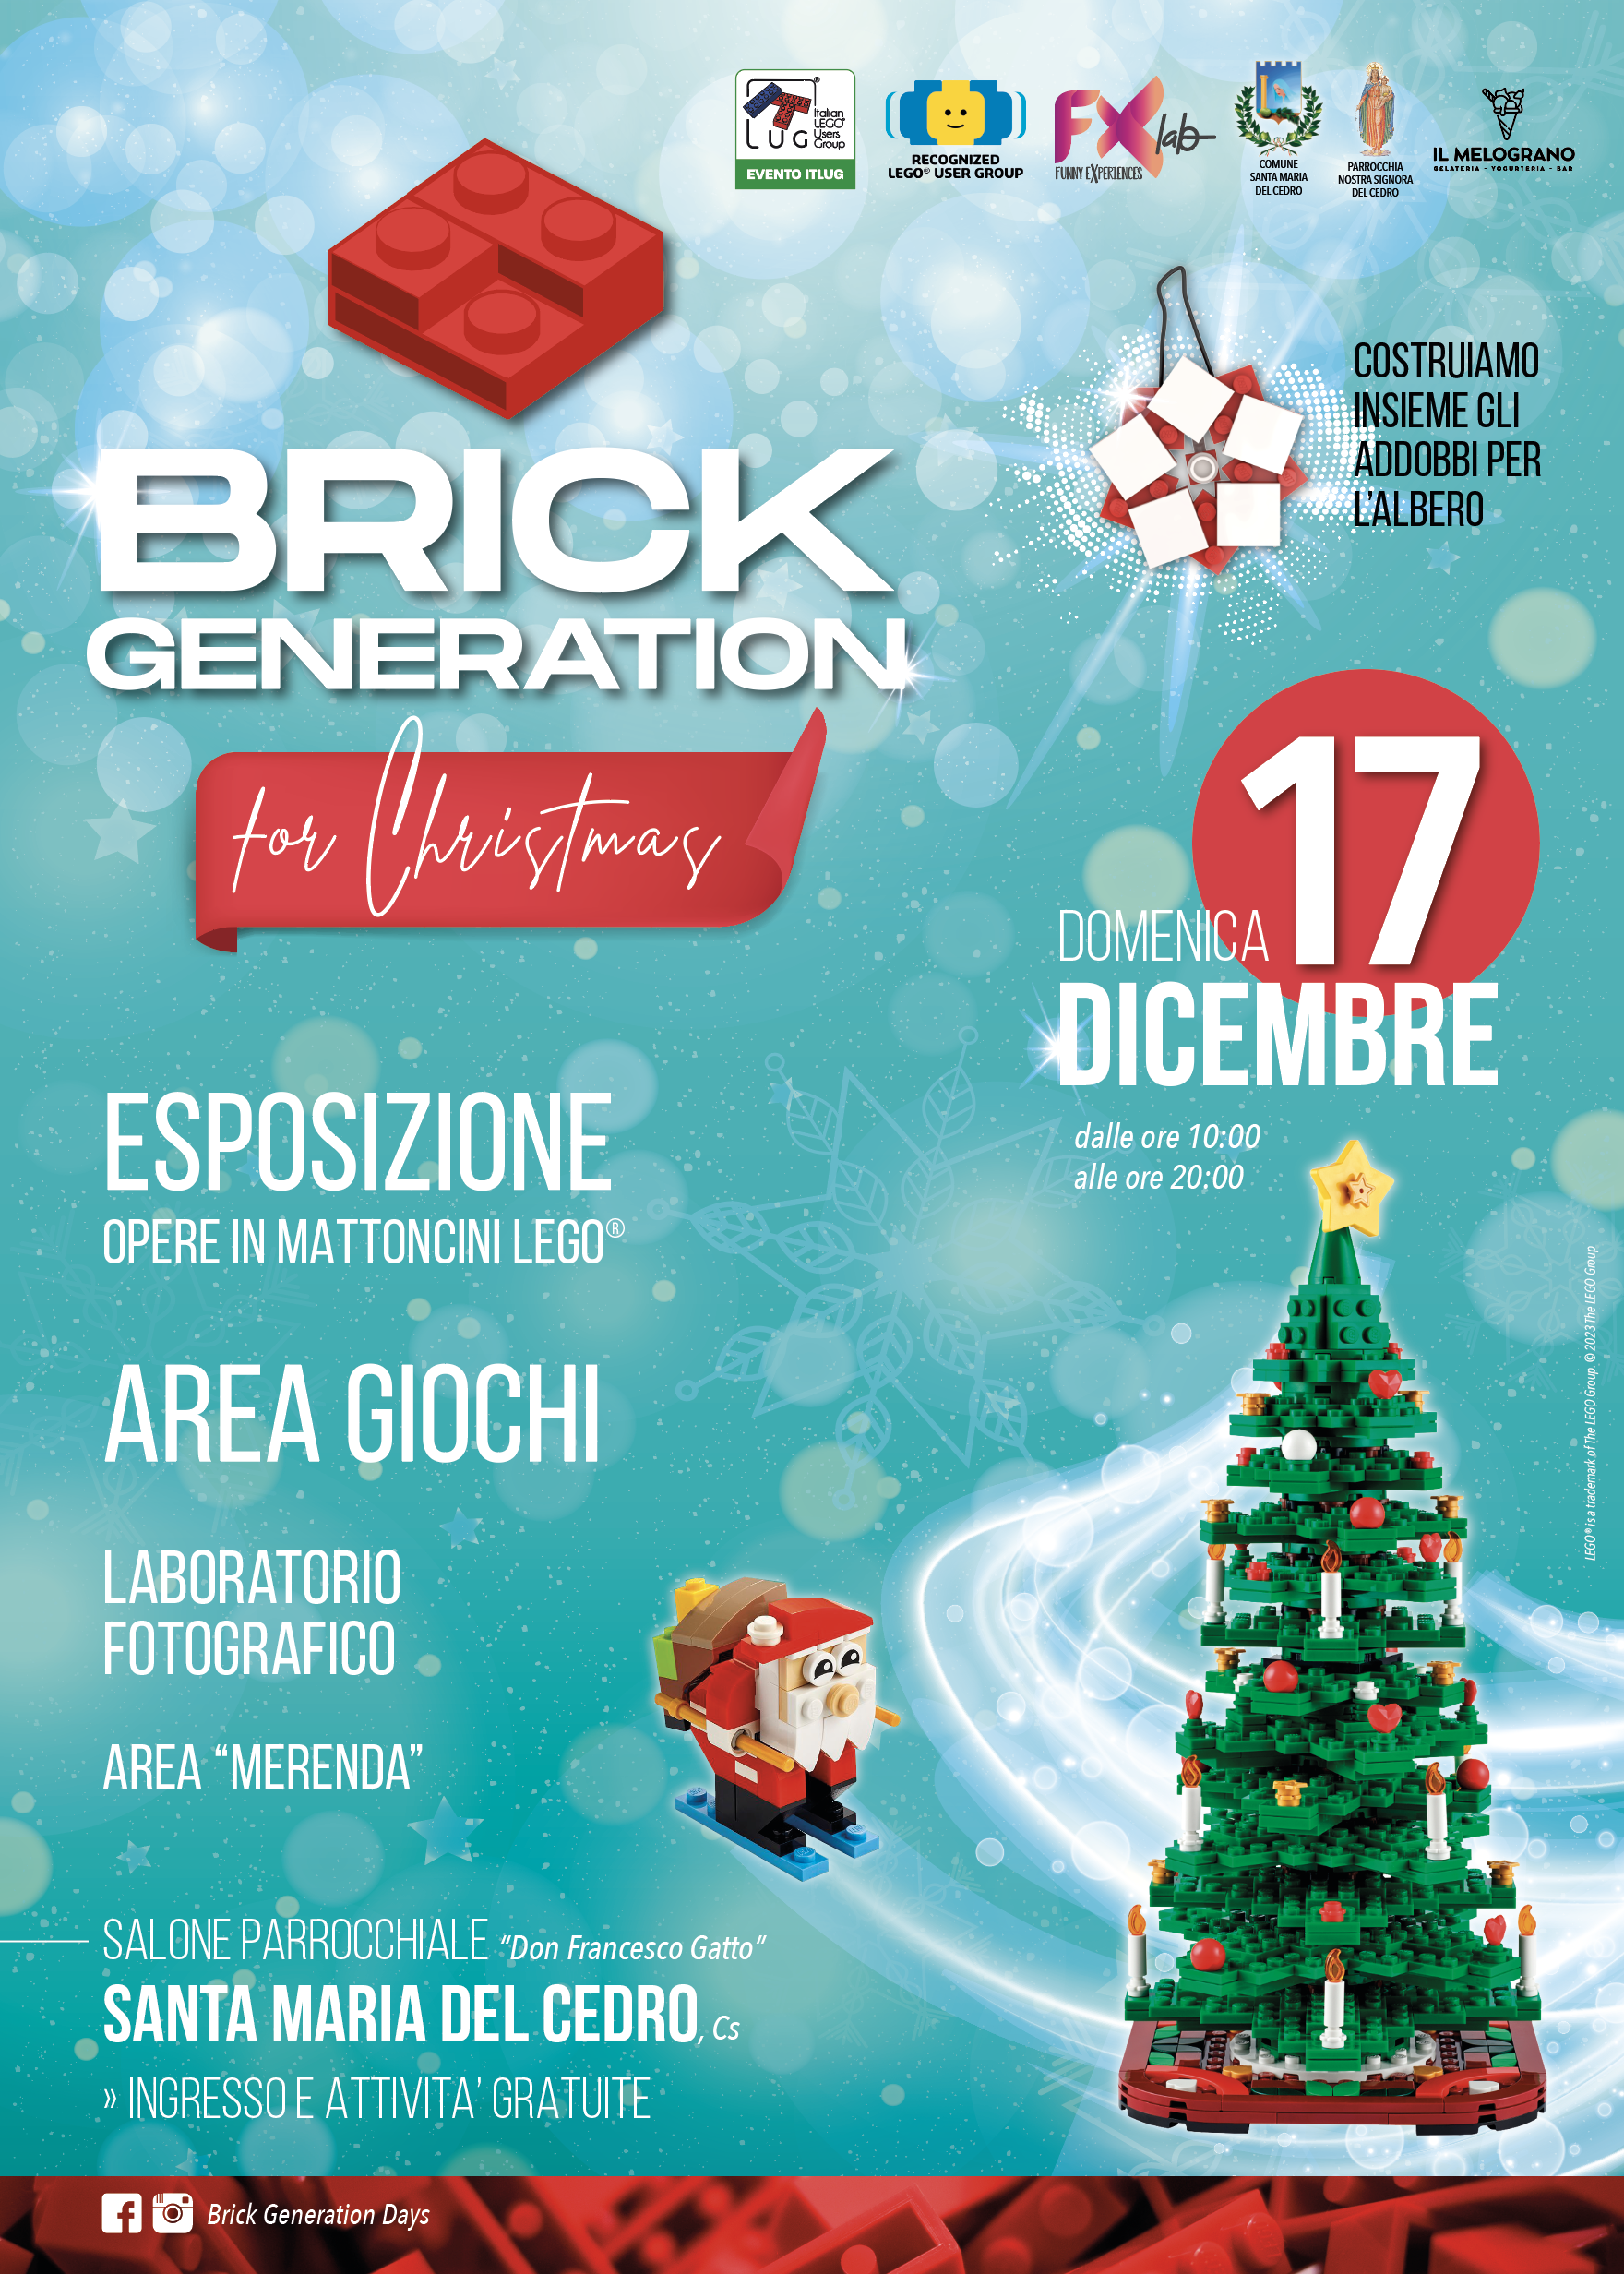 ItLUG partecipa a "Brick Generation for Christmas"